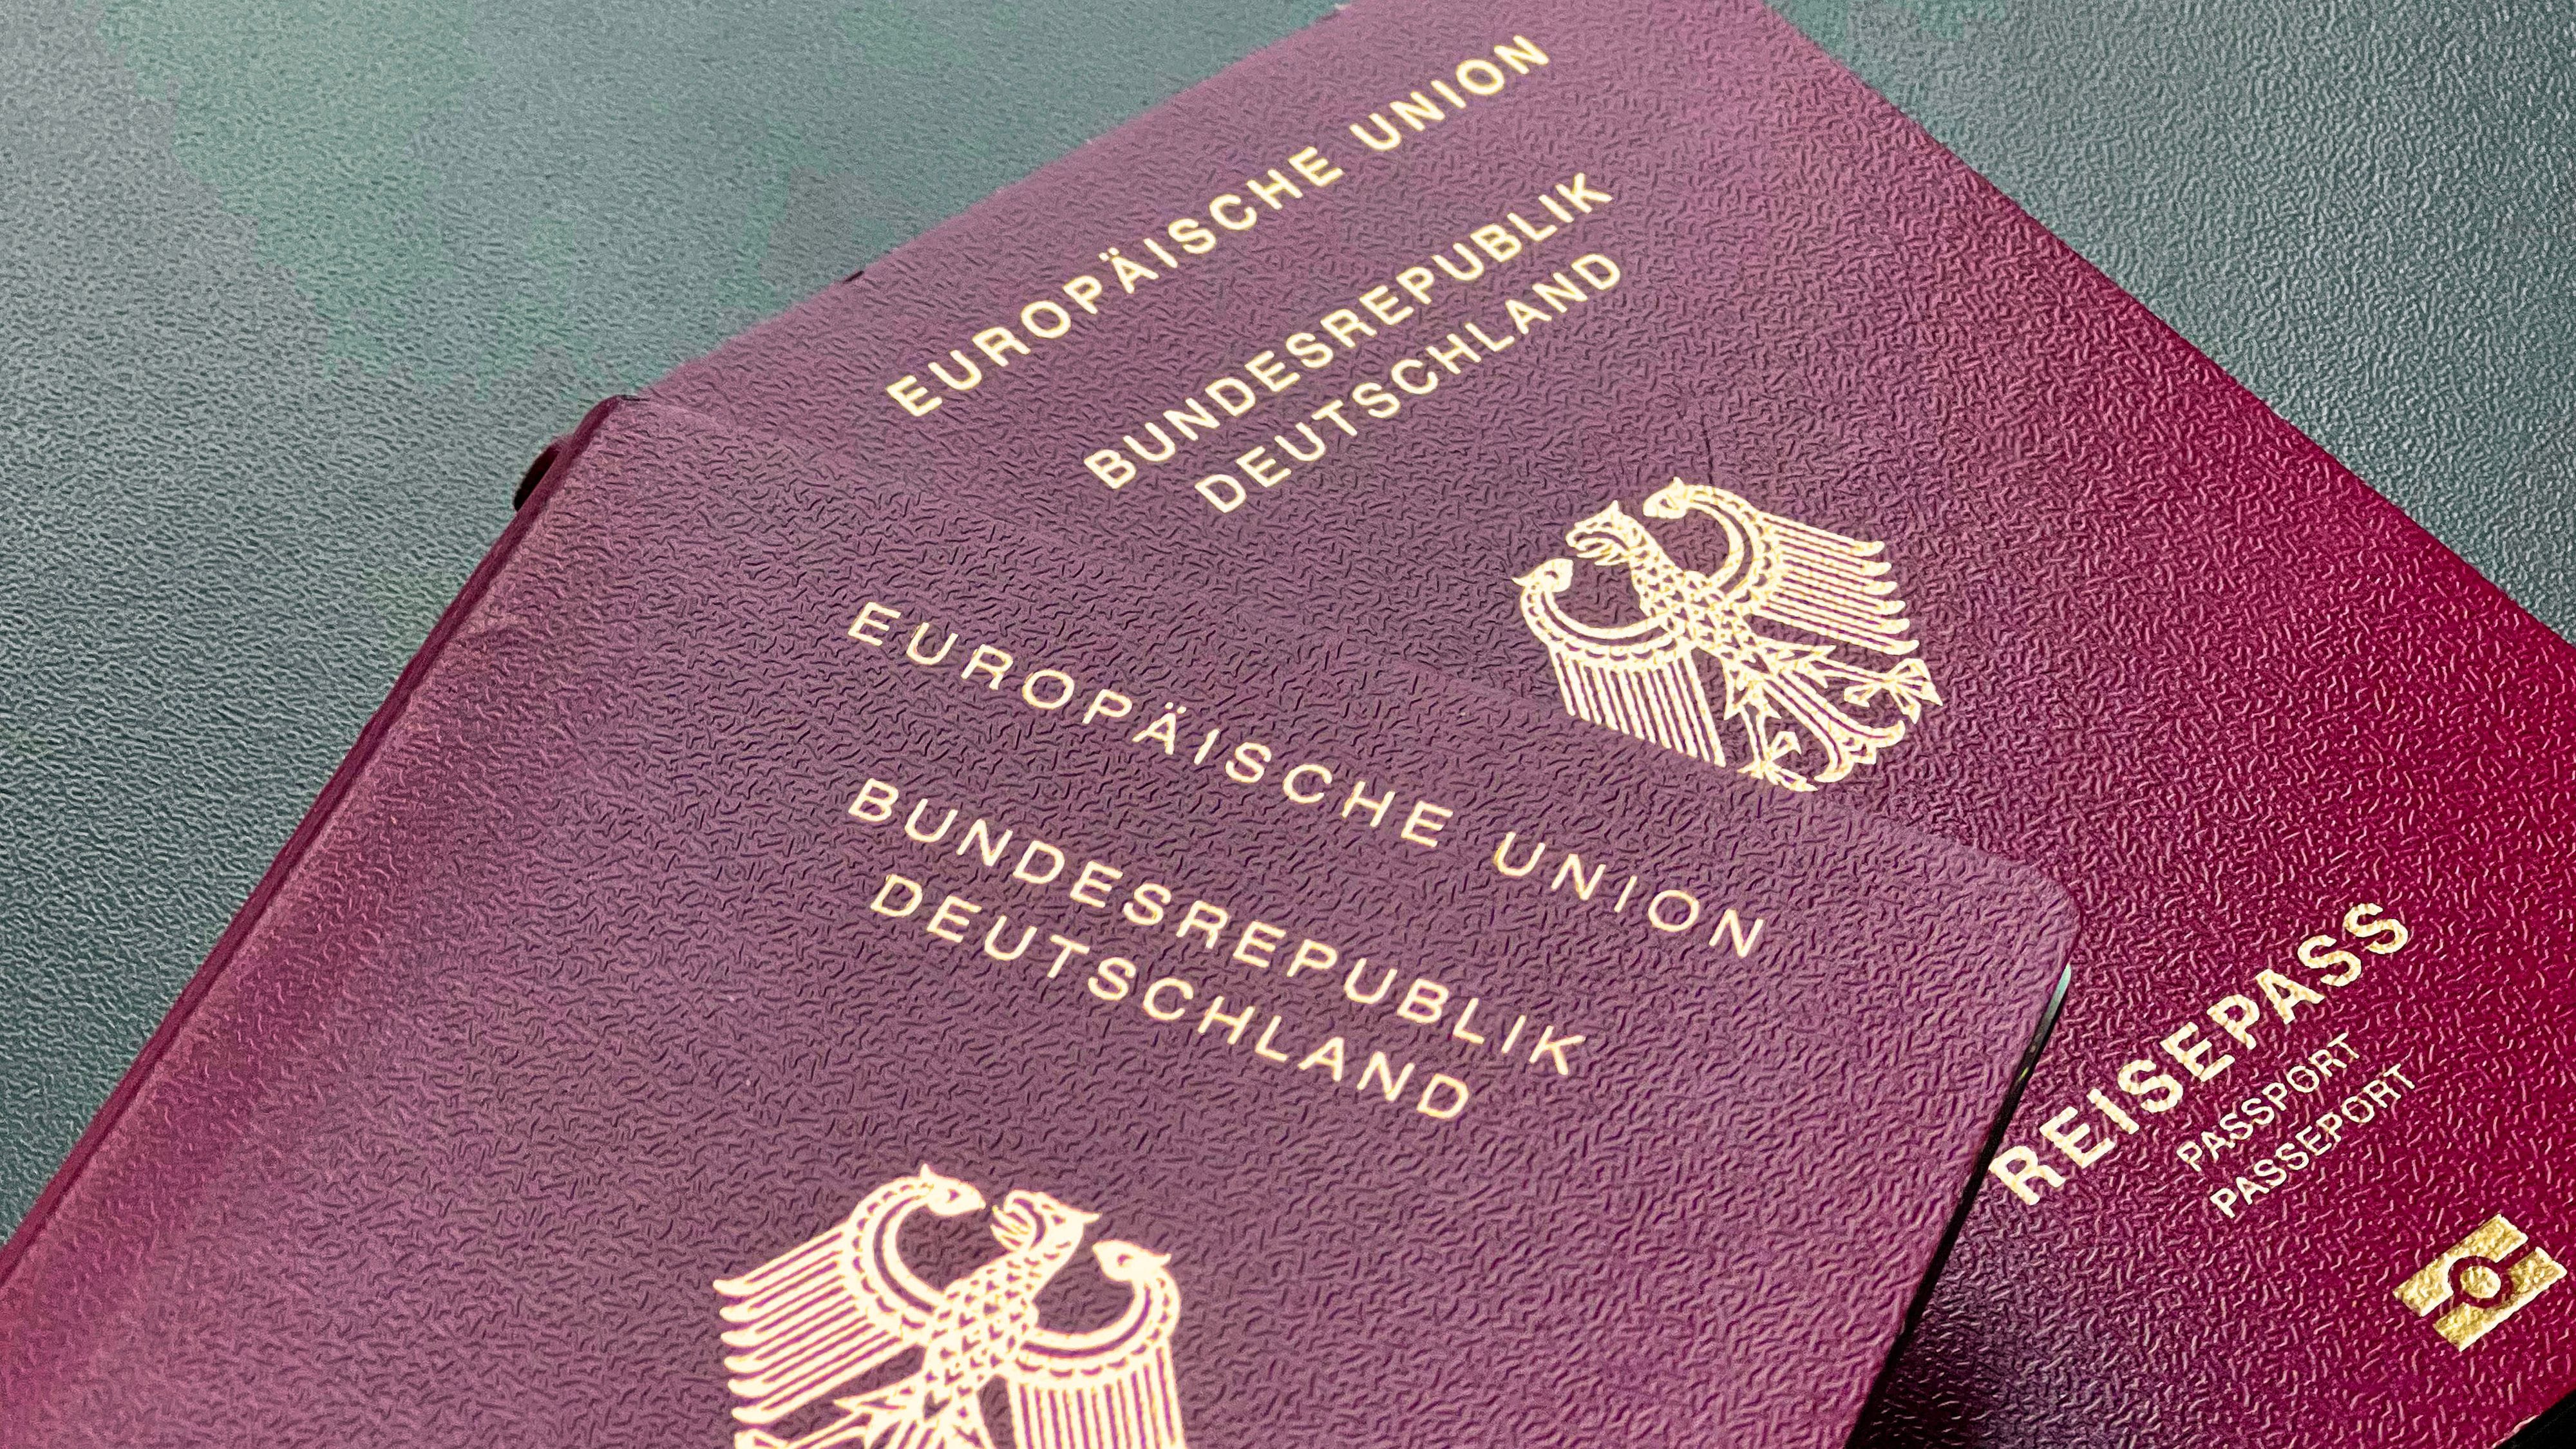 Schnellere Einbürgerung: Bundestag reformiert Staatsangehörigkeitsrecht